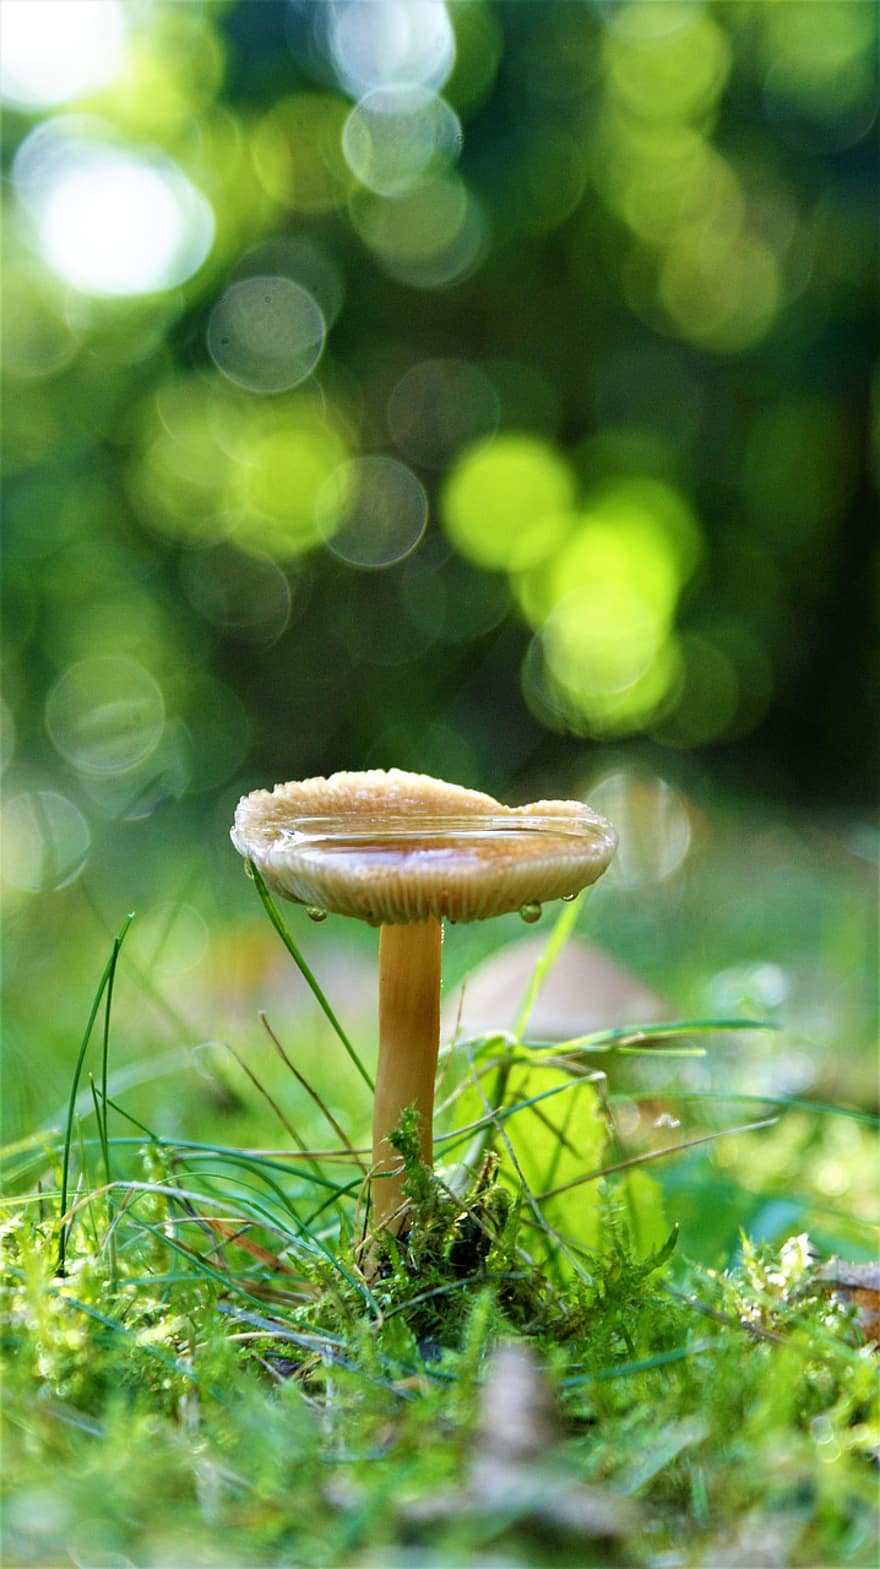 houba, voda, tráva, houba na mytí, výtrus, Druhy hub, mykologie, lesní půda, Příroda, podzim, kapky vody